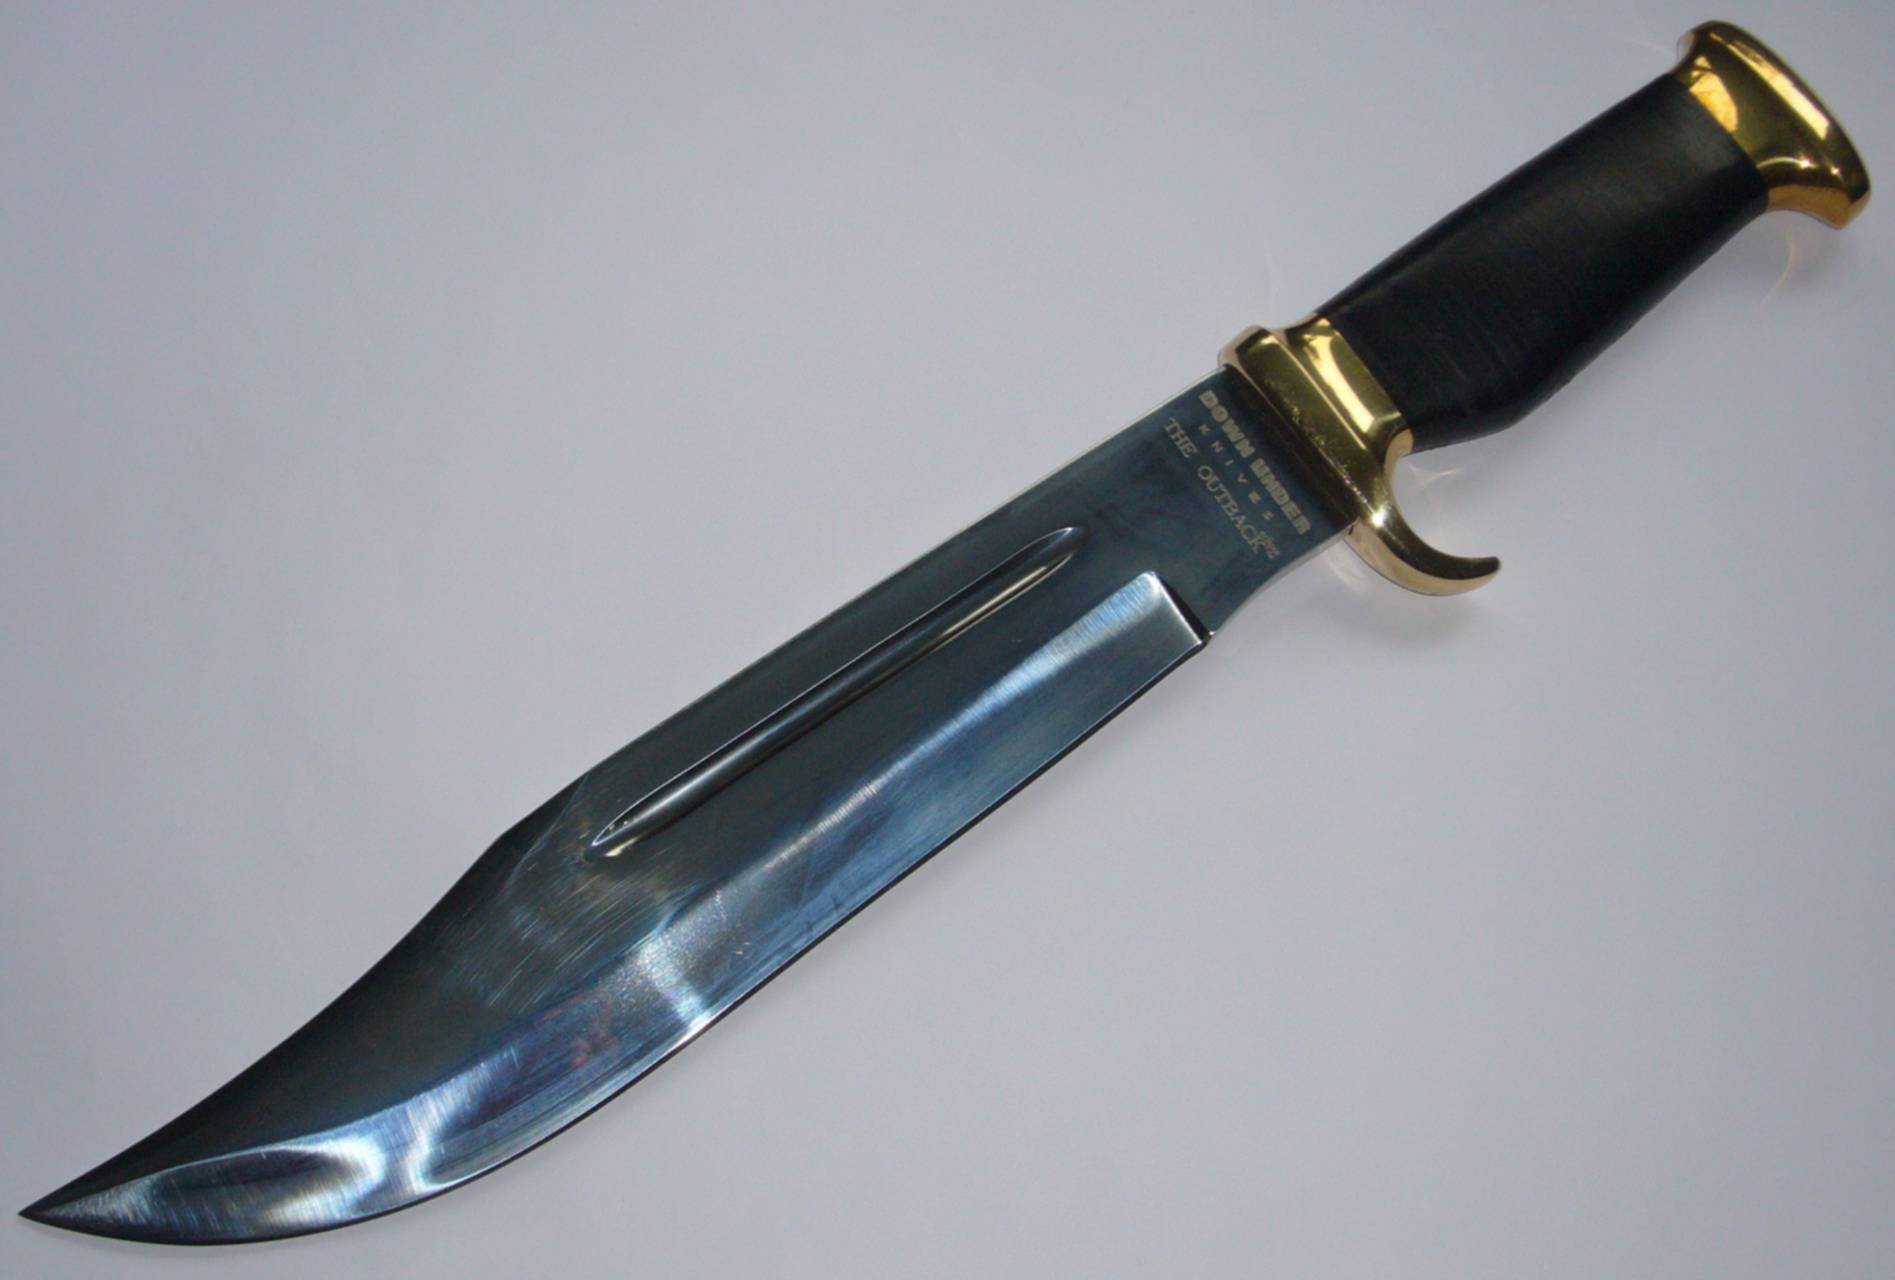 Ножи купить в пензе. Сербский нож. СД на ноже. YJ; Luxe sale нож. Сербский нож с красивым узором.